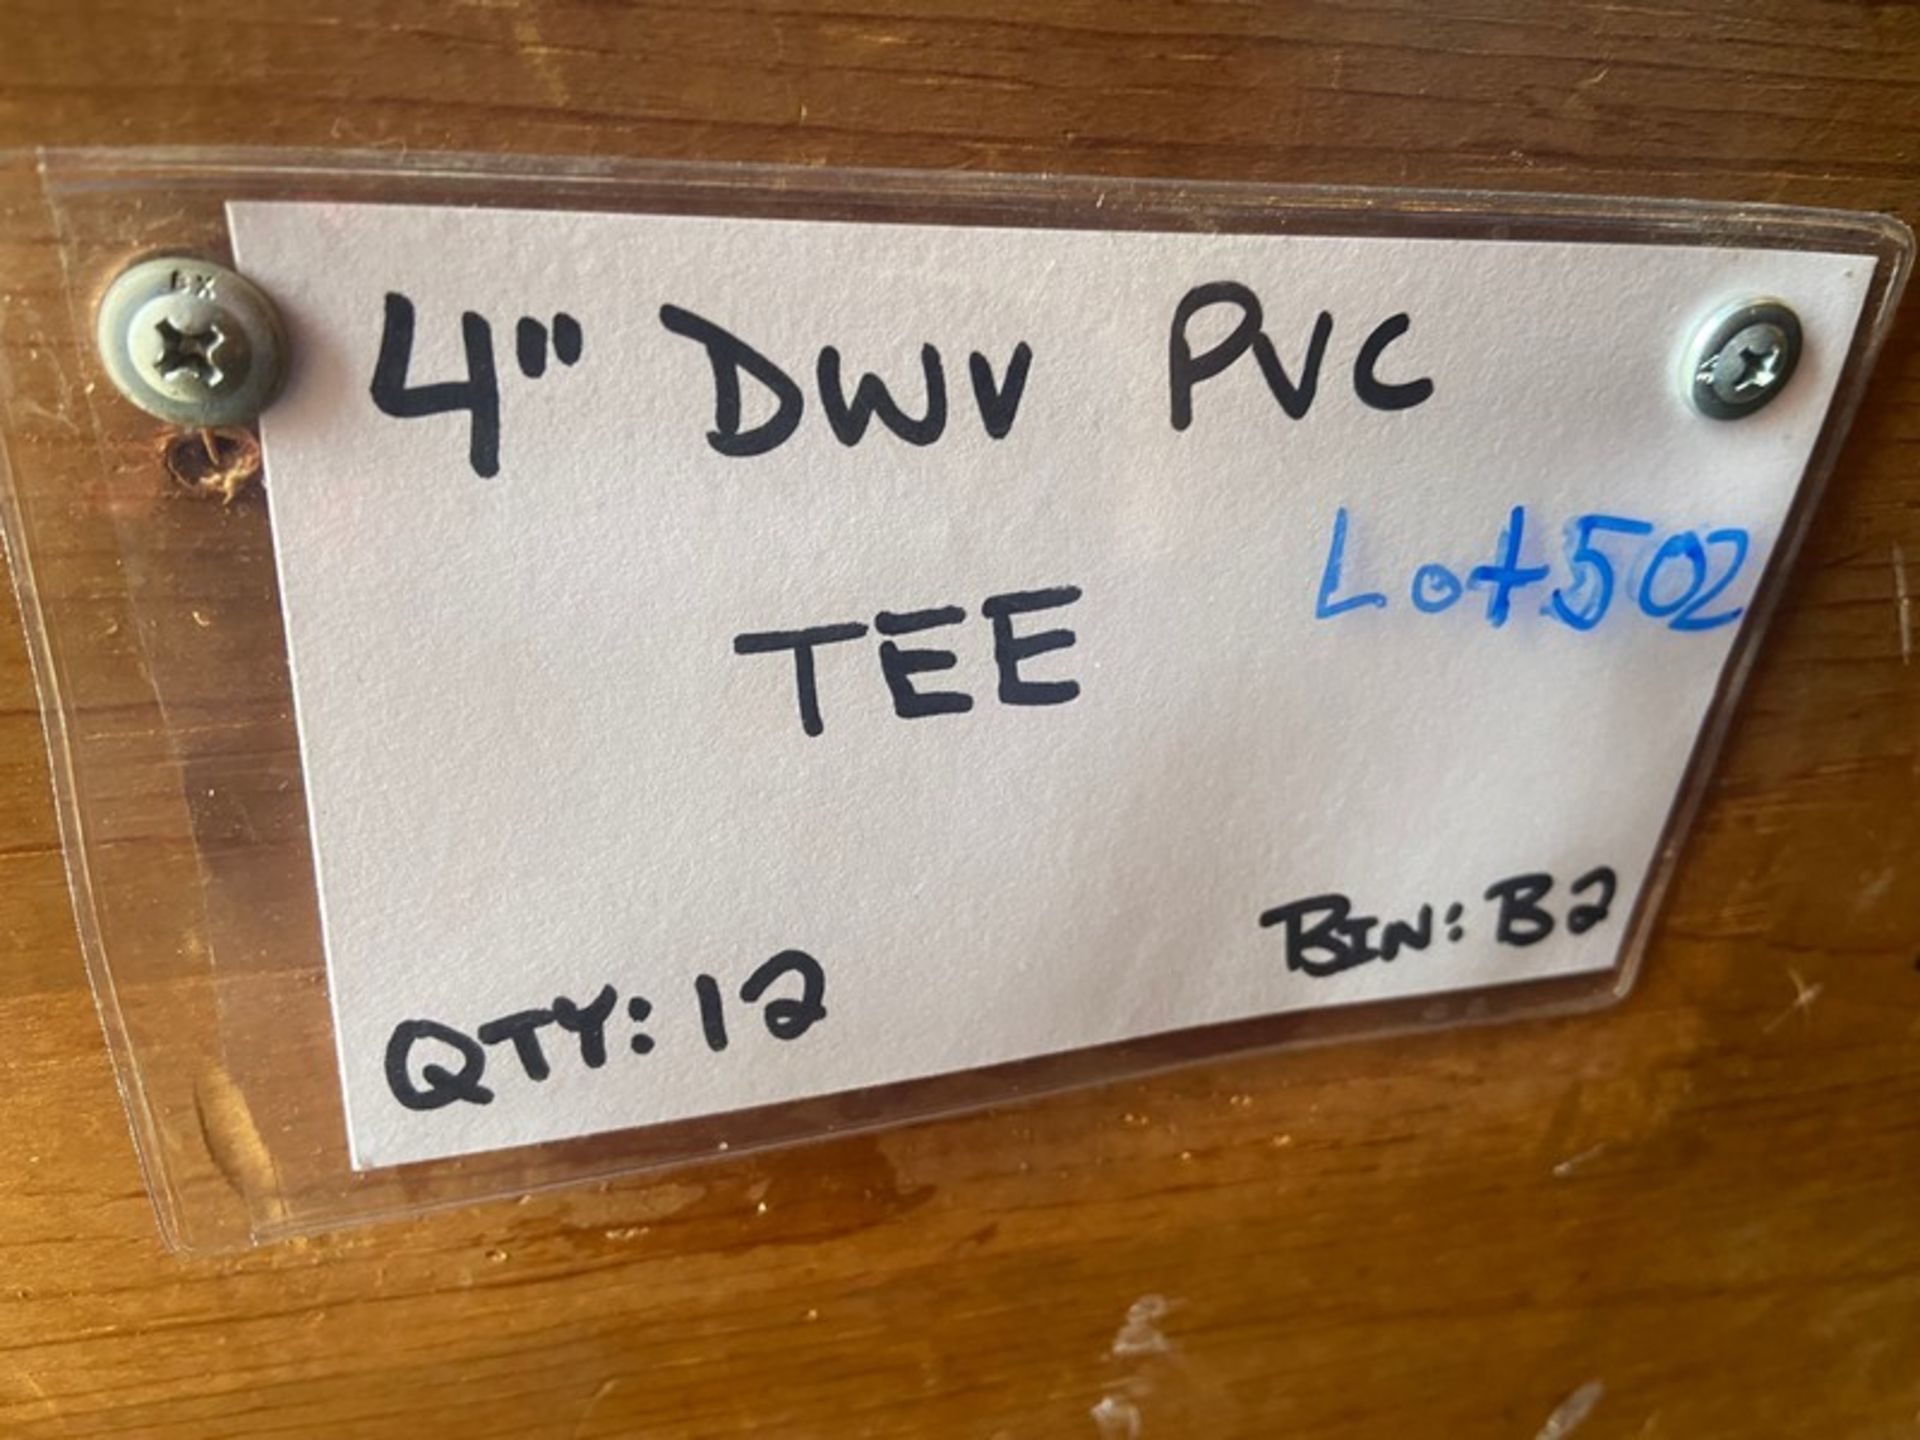 4" DWV PVC TEE (Bin: B2) (Trailer #5) (LOCATED IN MONROEVILLE, PA) - Bild 2 aus 4